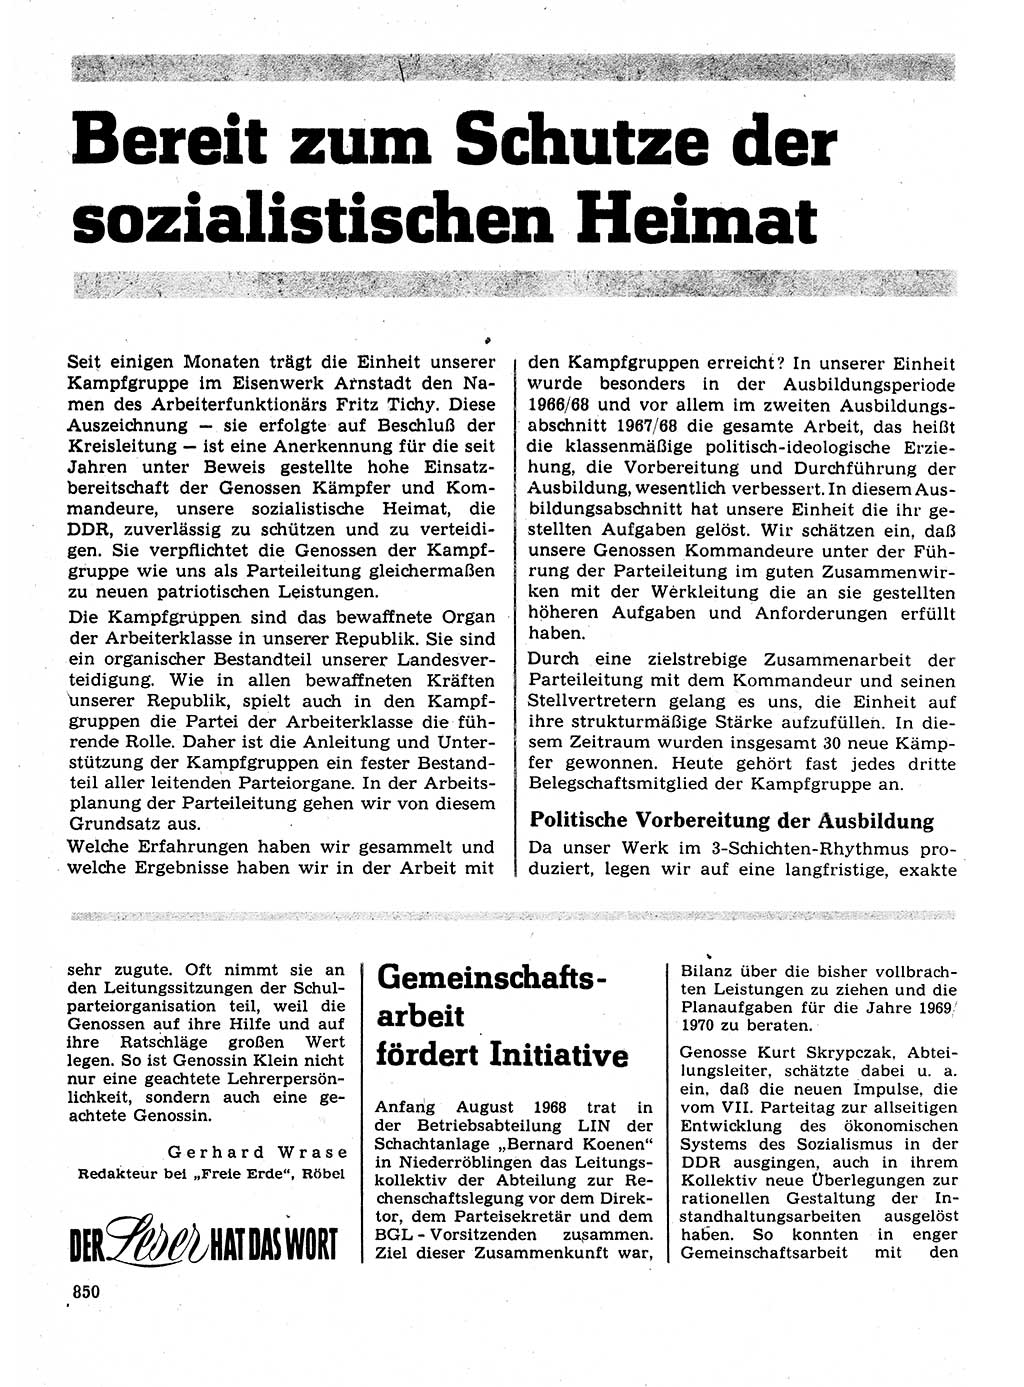 Neuer Weg (NW), Organ des Zentralkomitees (ZK) der SED (Sozialistische Einheitspartei Deutschlands) für Fragen des Parteilebens, 23. Jahrgang [Deutsche Demokratische Republik (DDR)] 1968, Seite 834 (NW ZK SED DDR 1968, S. 834)